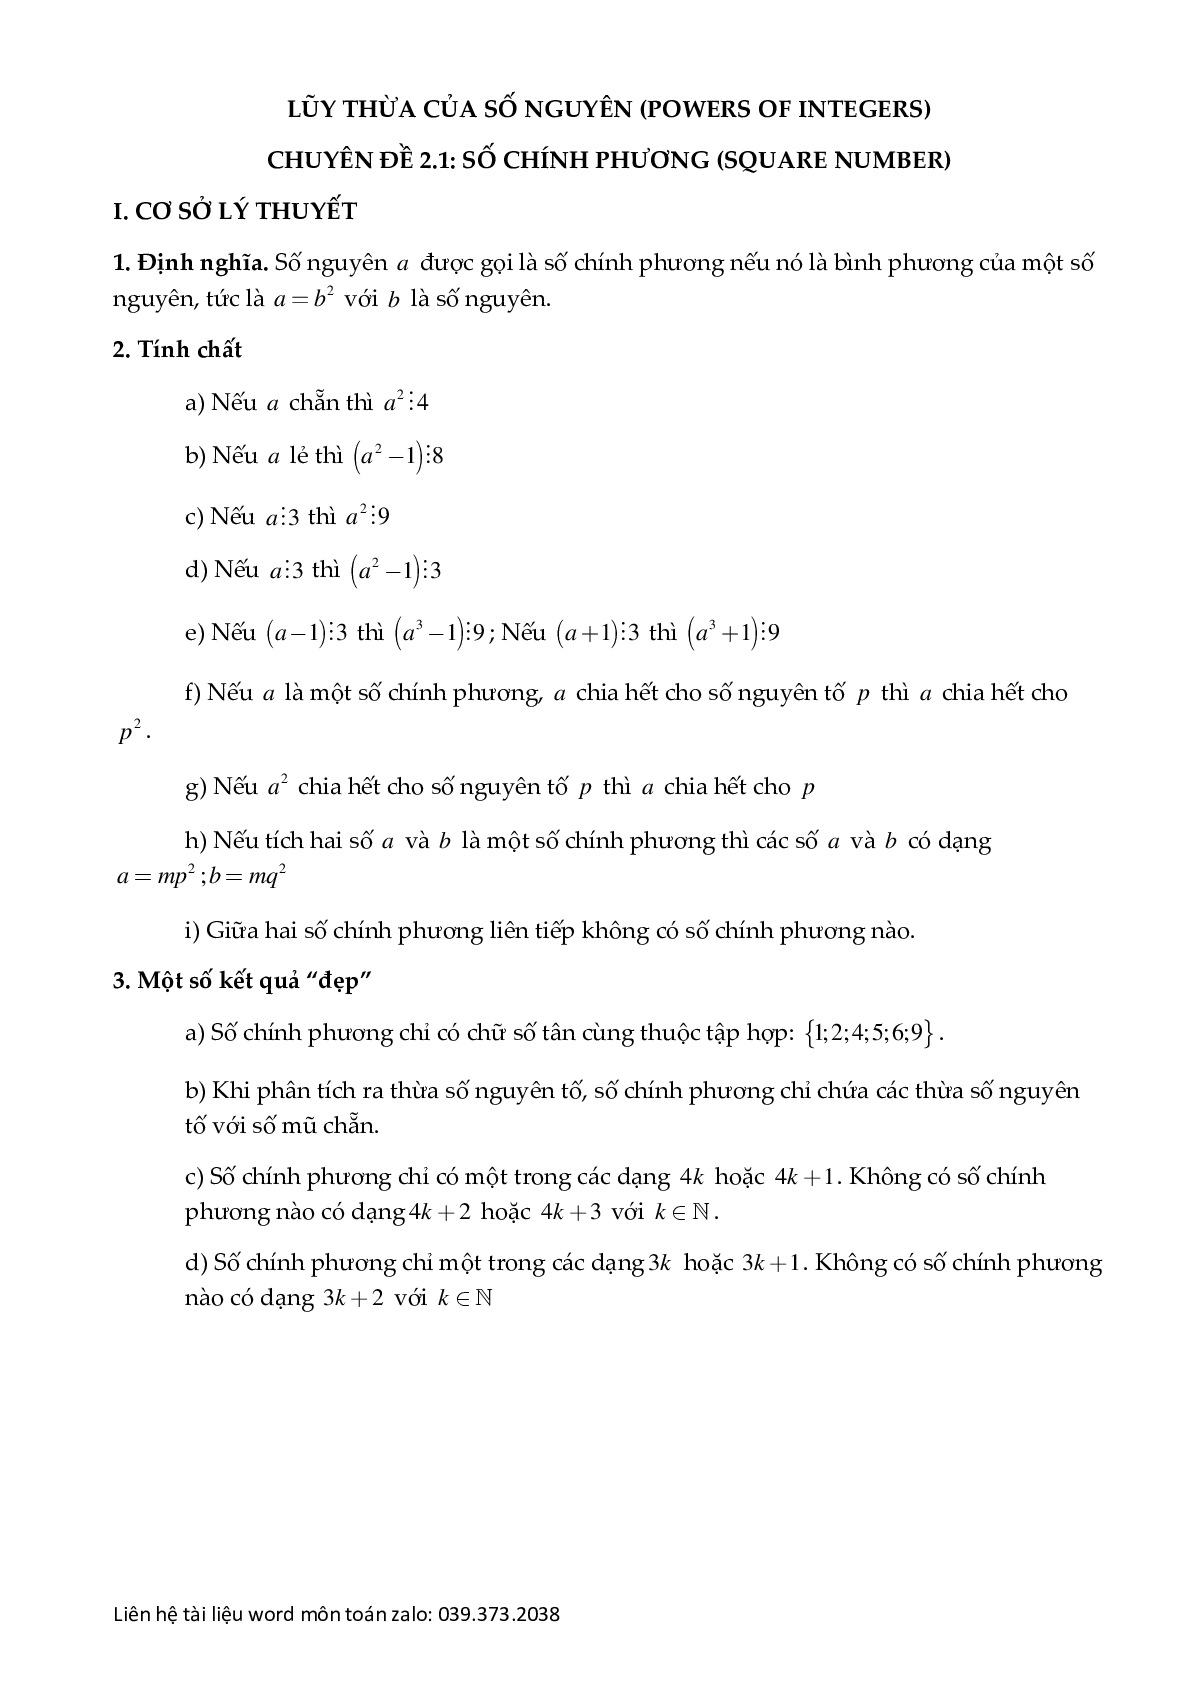 Chuyên đề số chính phương (trang 1)